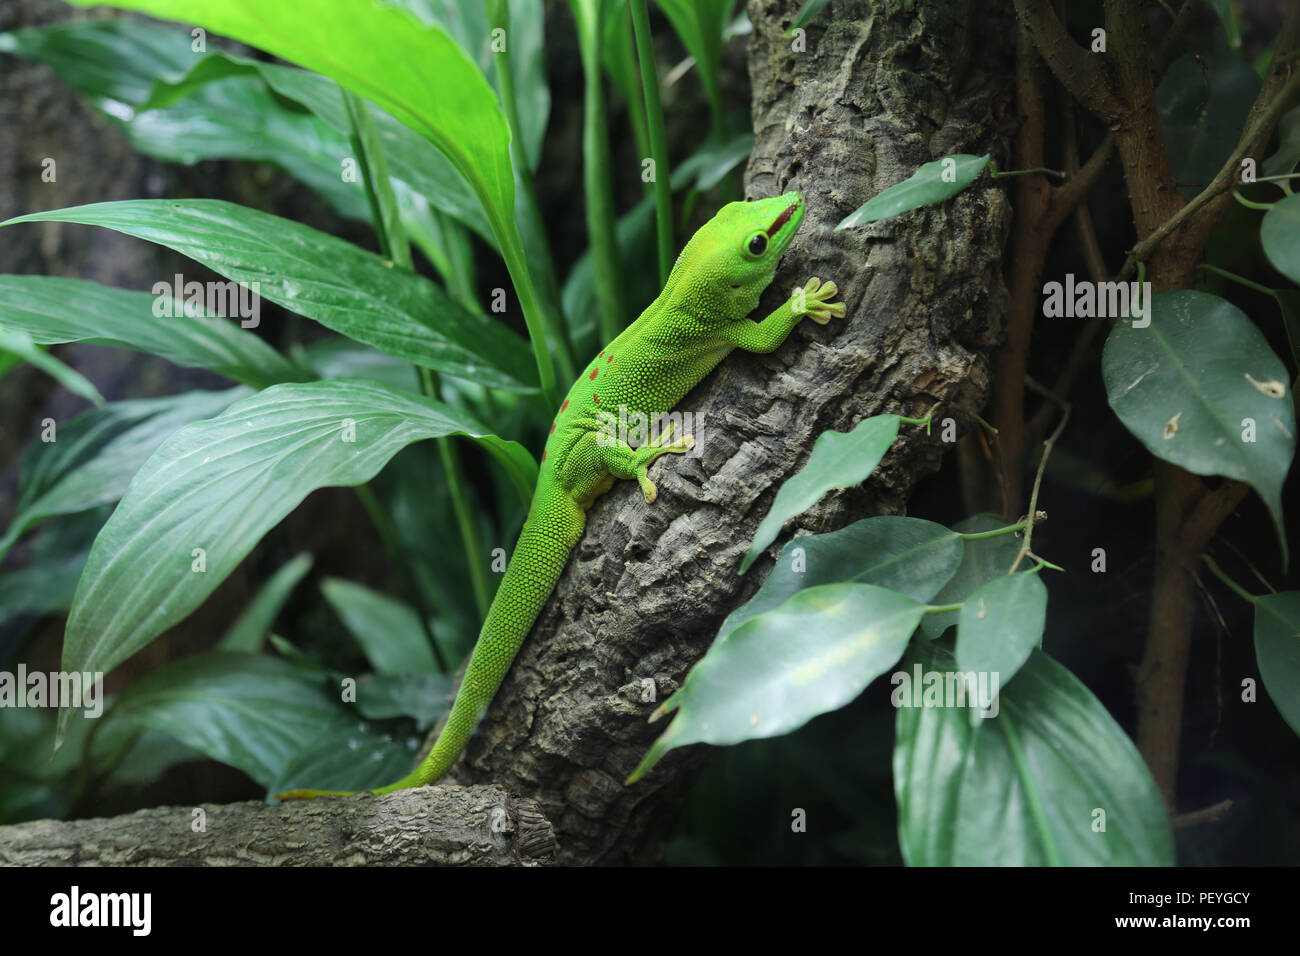 Green Madagascar Day Gecko (Phelsuma madagascariensis), Saltzburg Zoo, Saltzburg, Austria Stock Photo